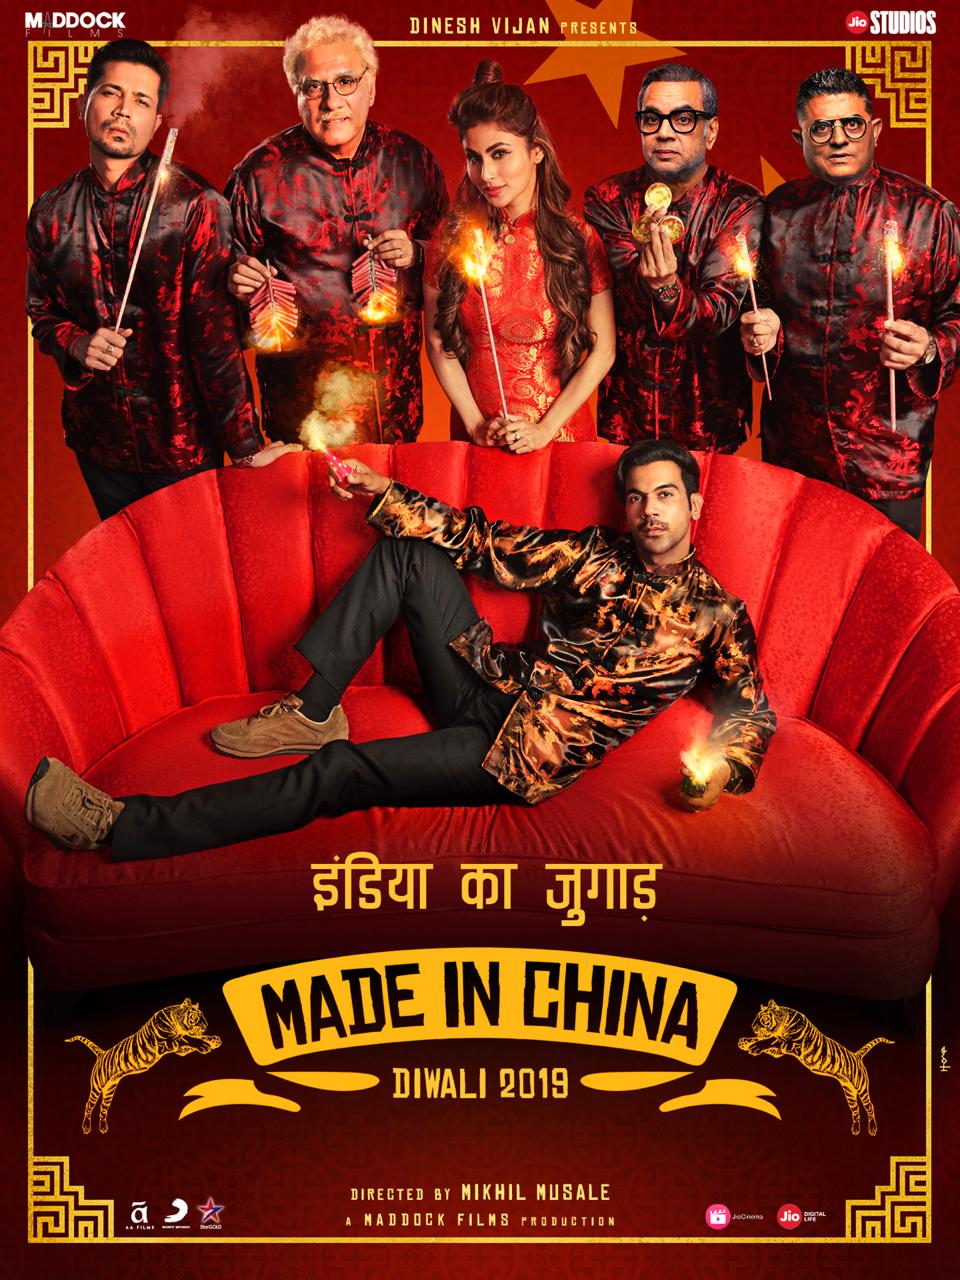 ดูหนังออนไลน์ฟรี Made in China (2019) เมด อิน ไชน่า